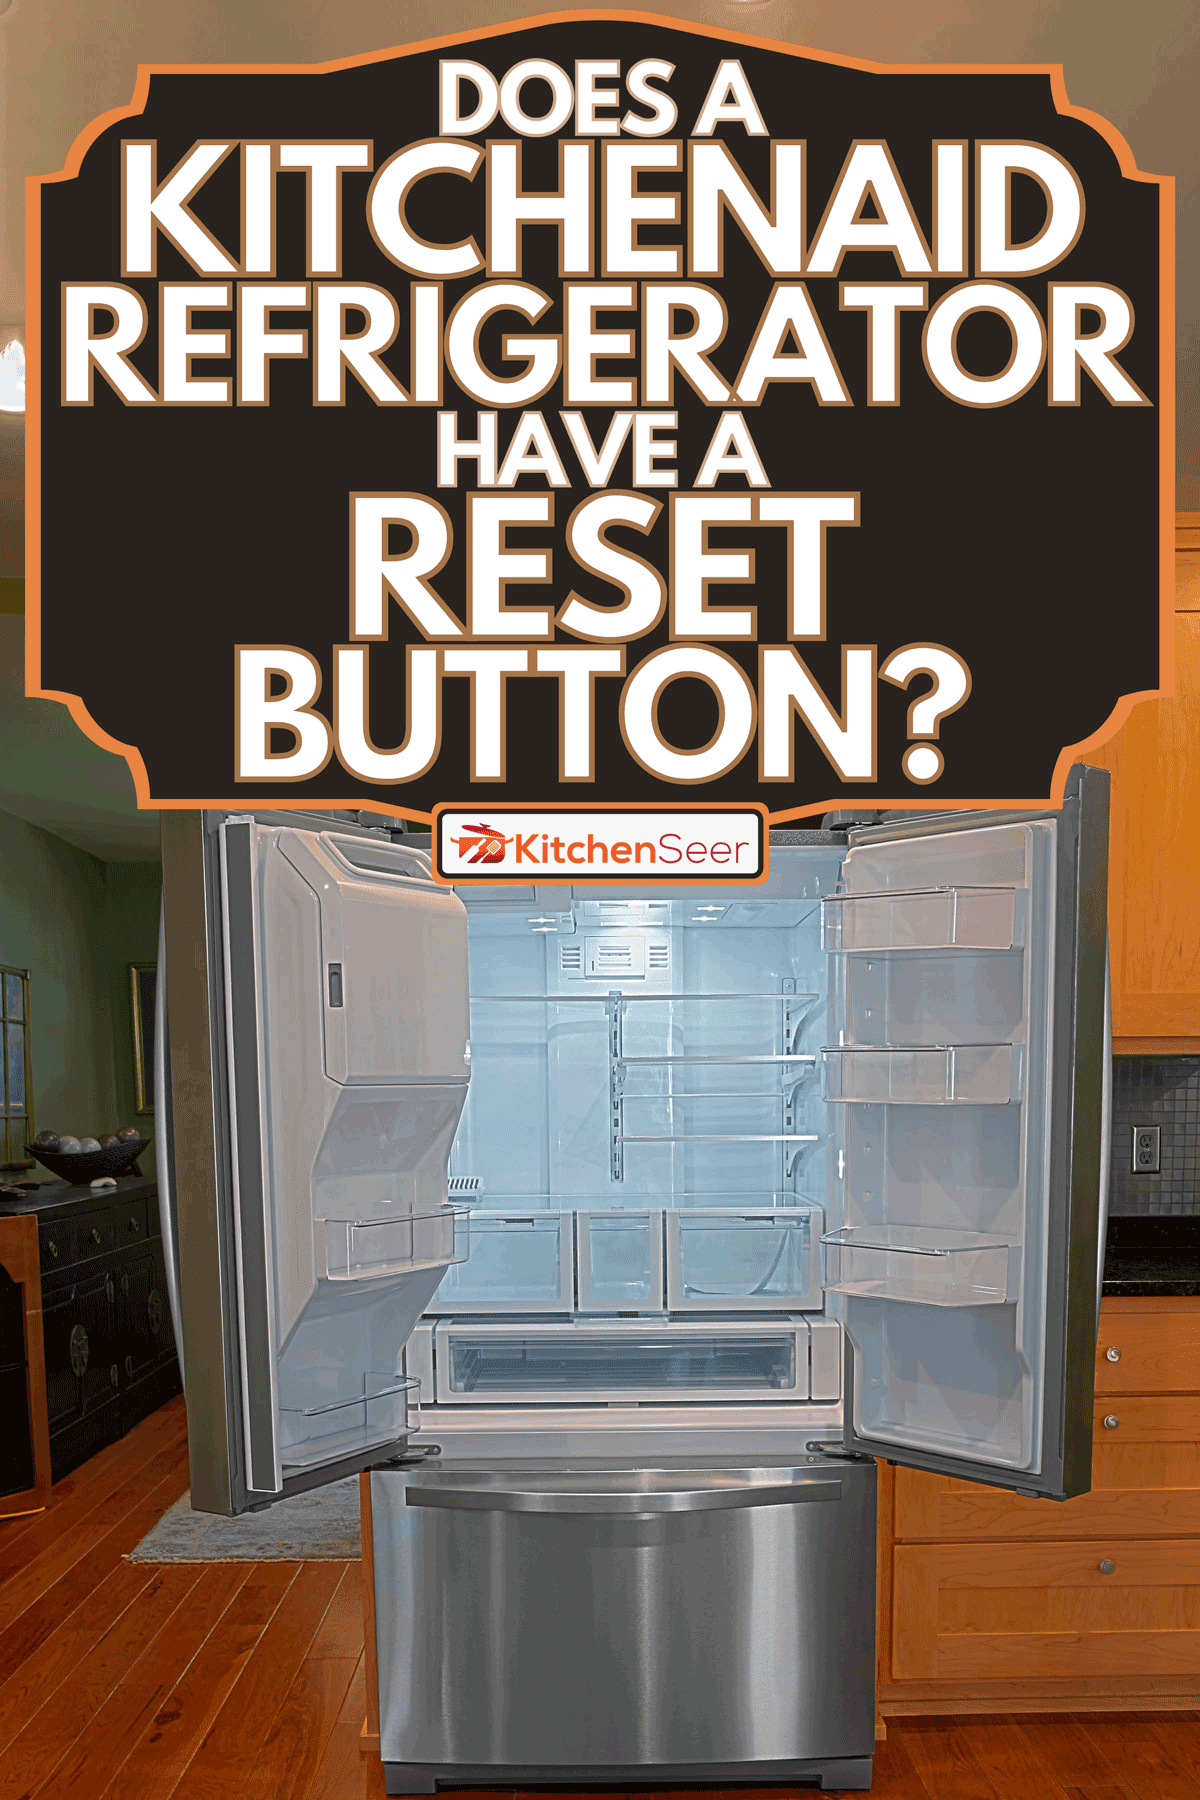 豪华的厨房新冰箱,厨bd手机下载房助手冰箱有一个重置按钮吗?